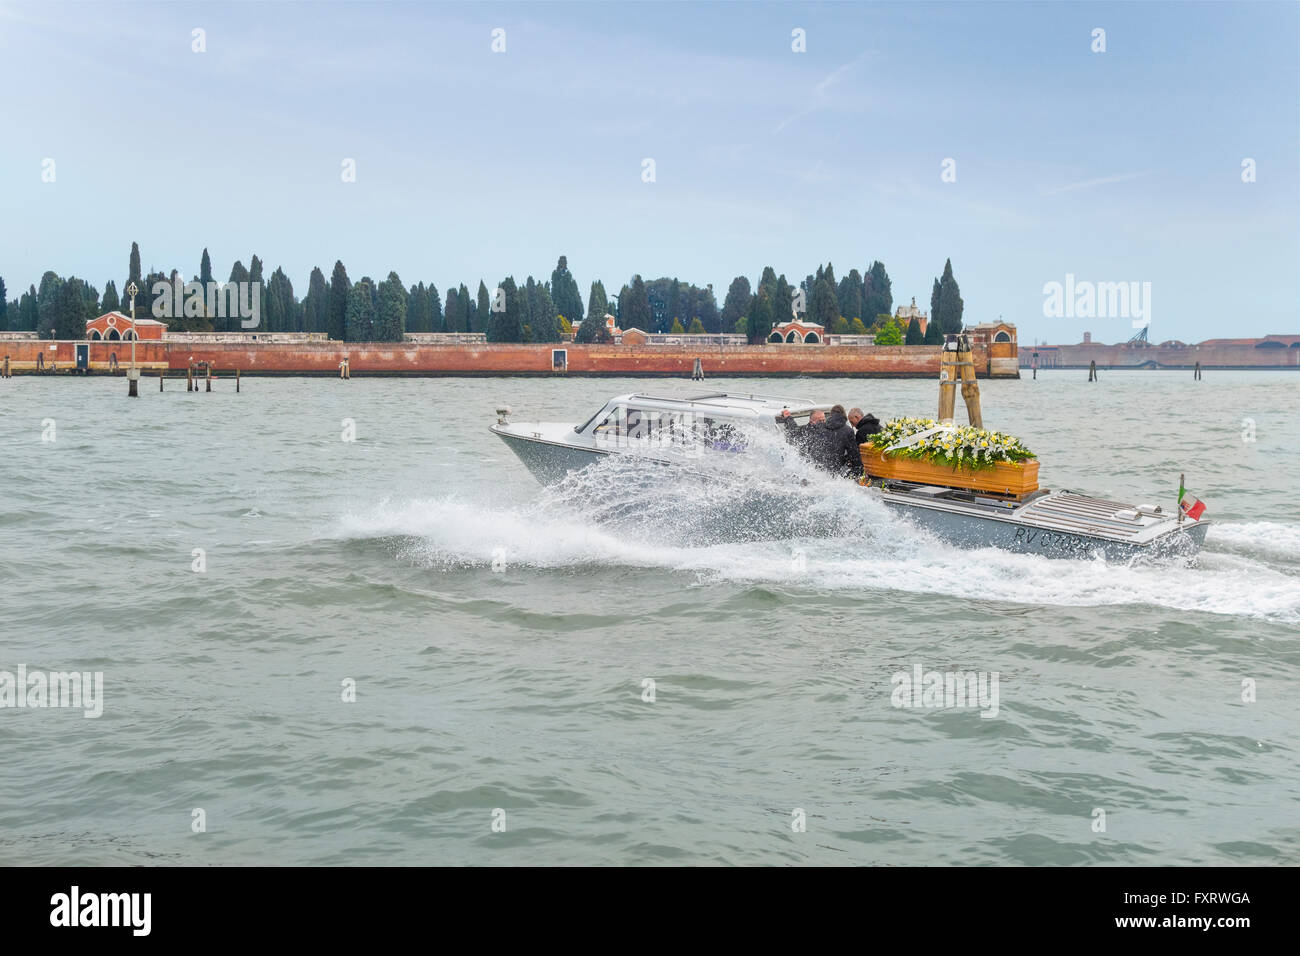 Venecia, Italia. Agua carroza funeraria, funeraria o barco en su camino hacia el cementerio de Venecia en la Isola di San Michele Isla. Foto de stock